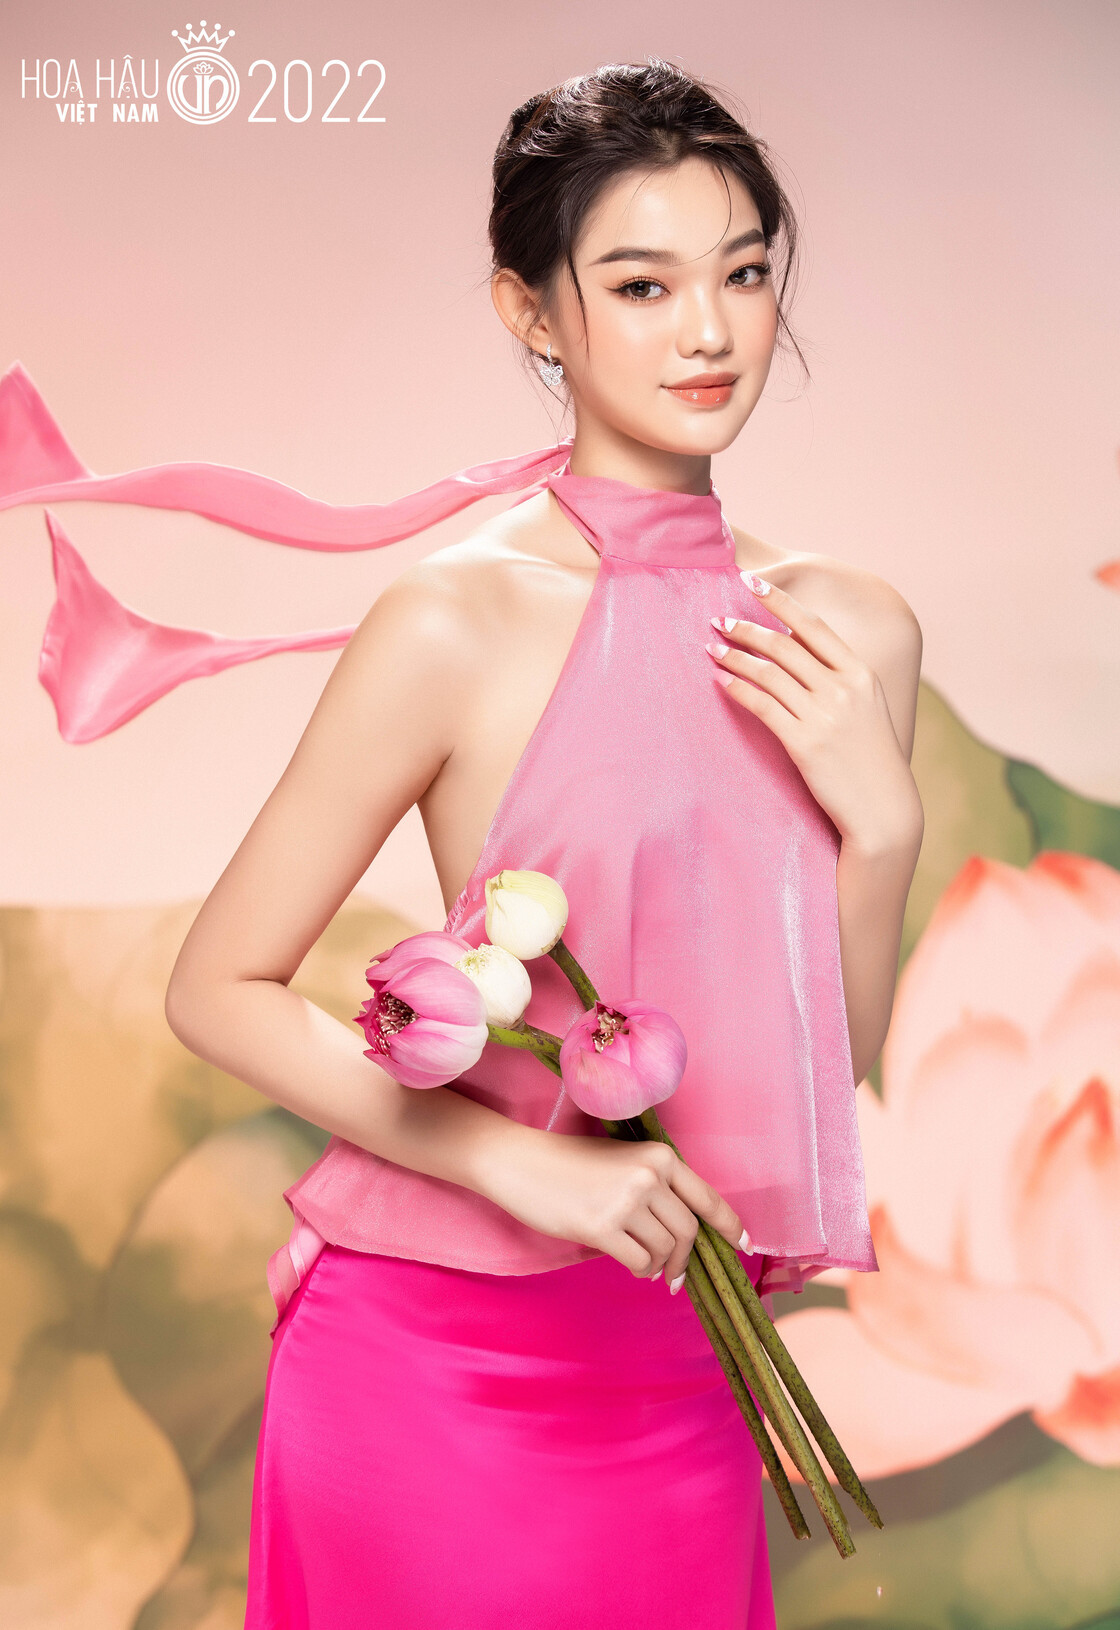 Nhan sắc ngọt ngào của các thí sinh Hoa hậu Việt Nam 2022